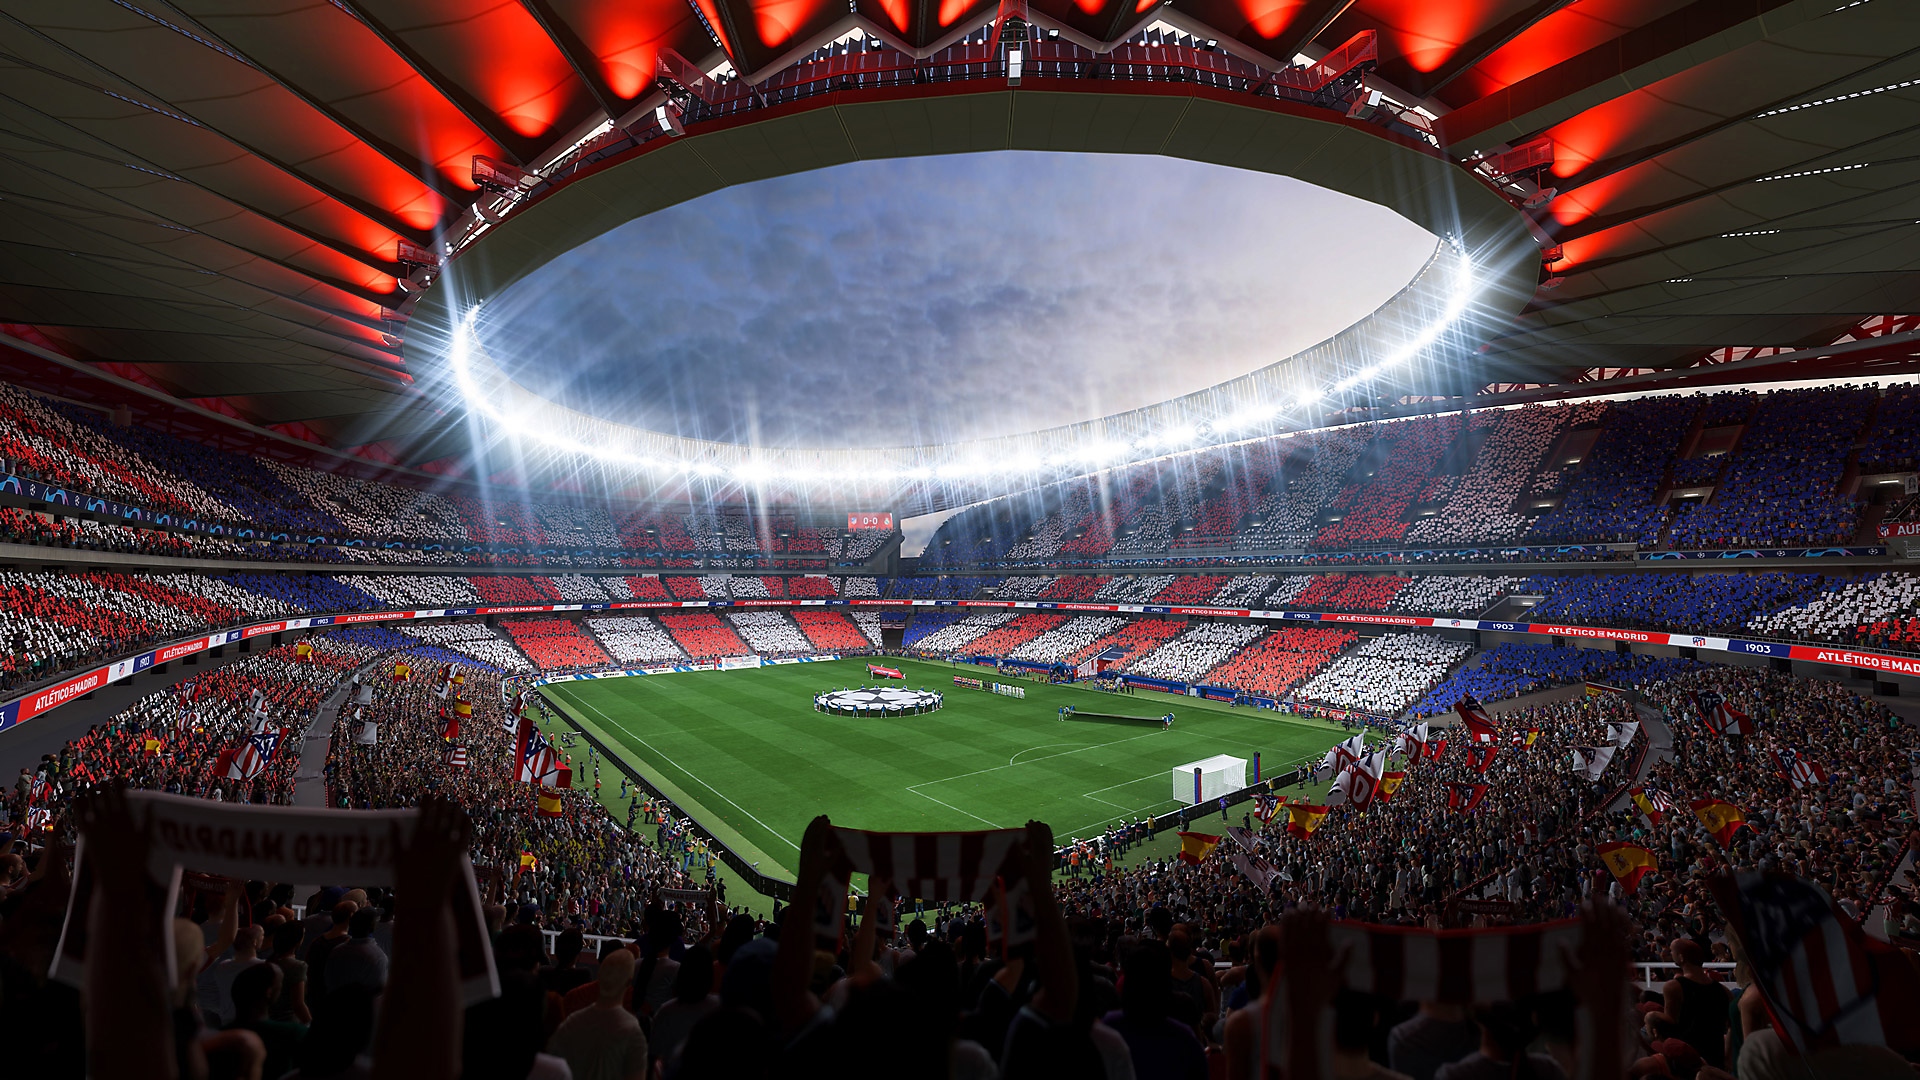 Skärmbild från EA Sports FIFA 23 på en fotbollsarena